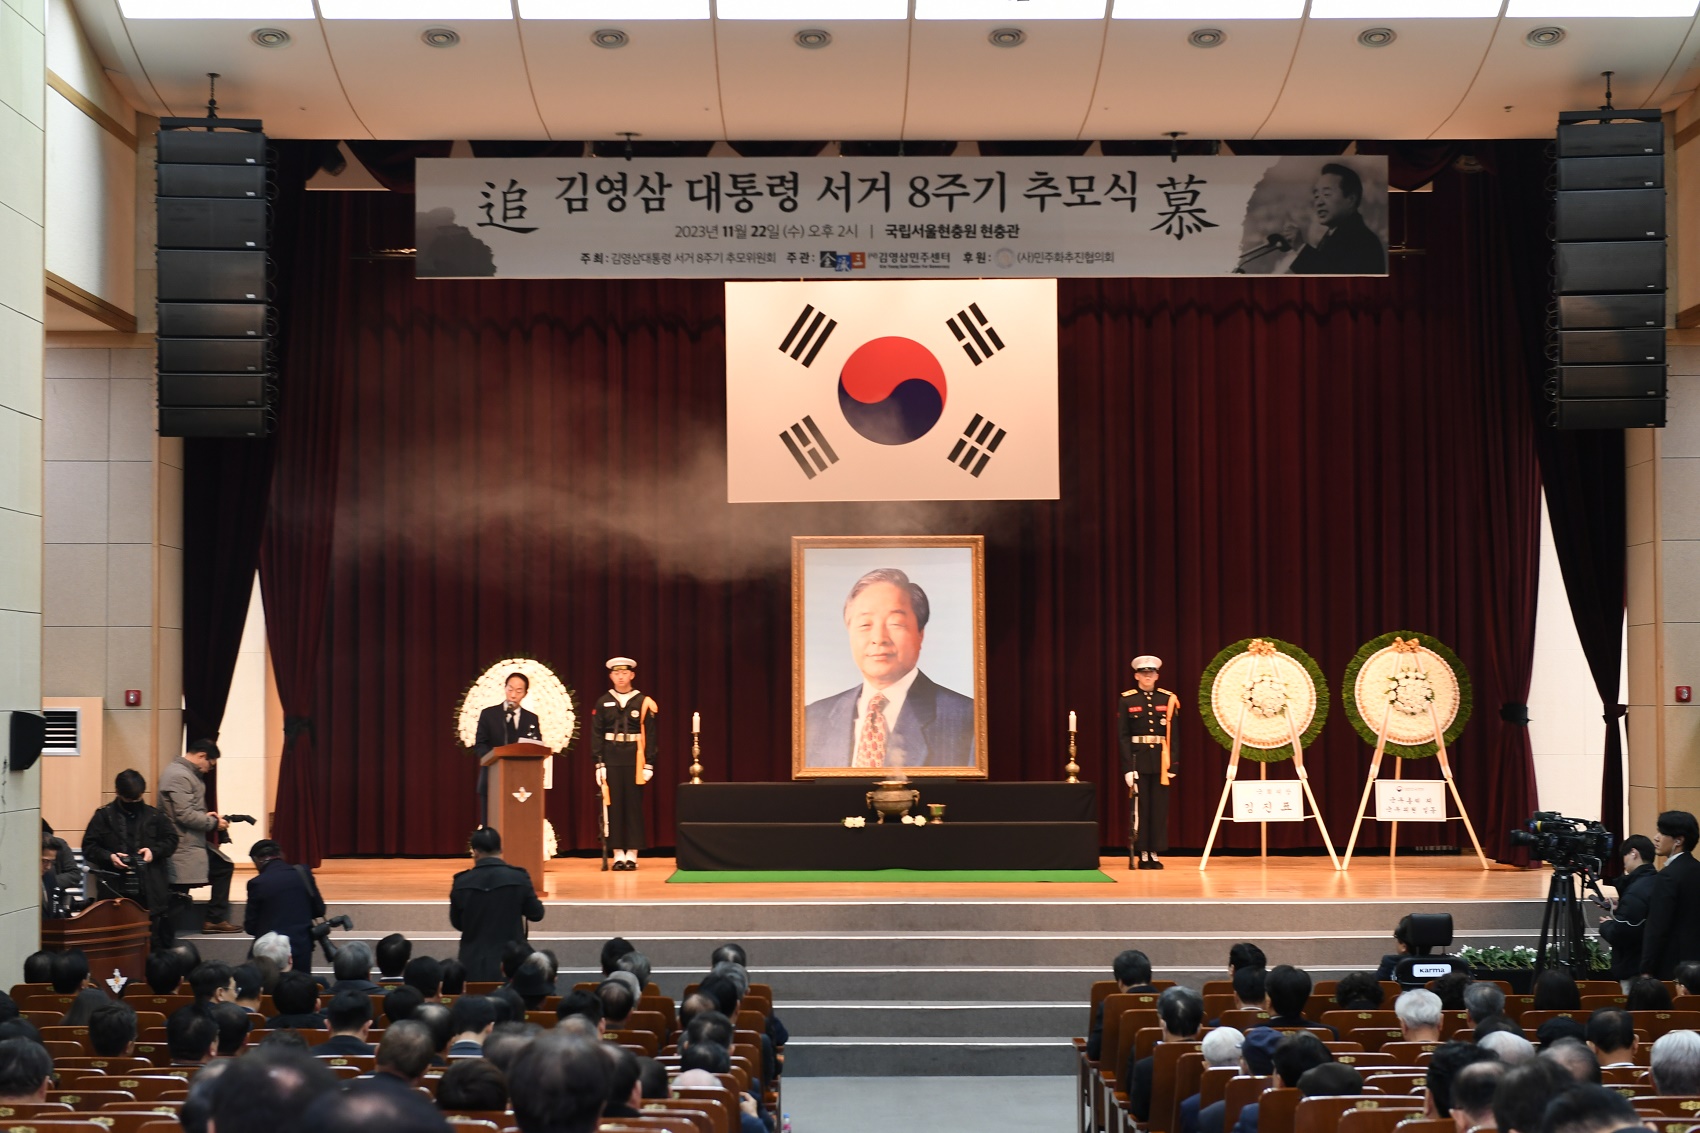 김영삼 전 대통령 8주기 추도식 (2023. 11. 22.) 대표이미지